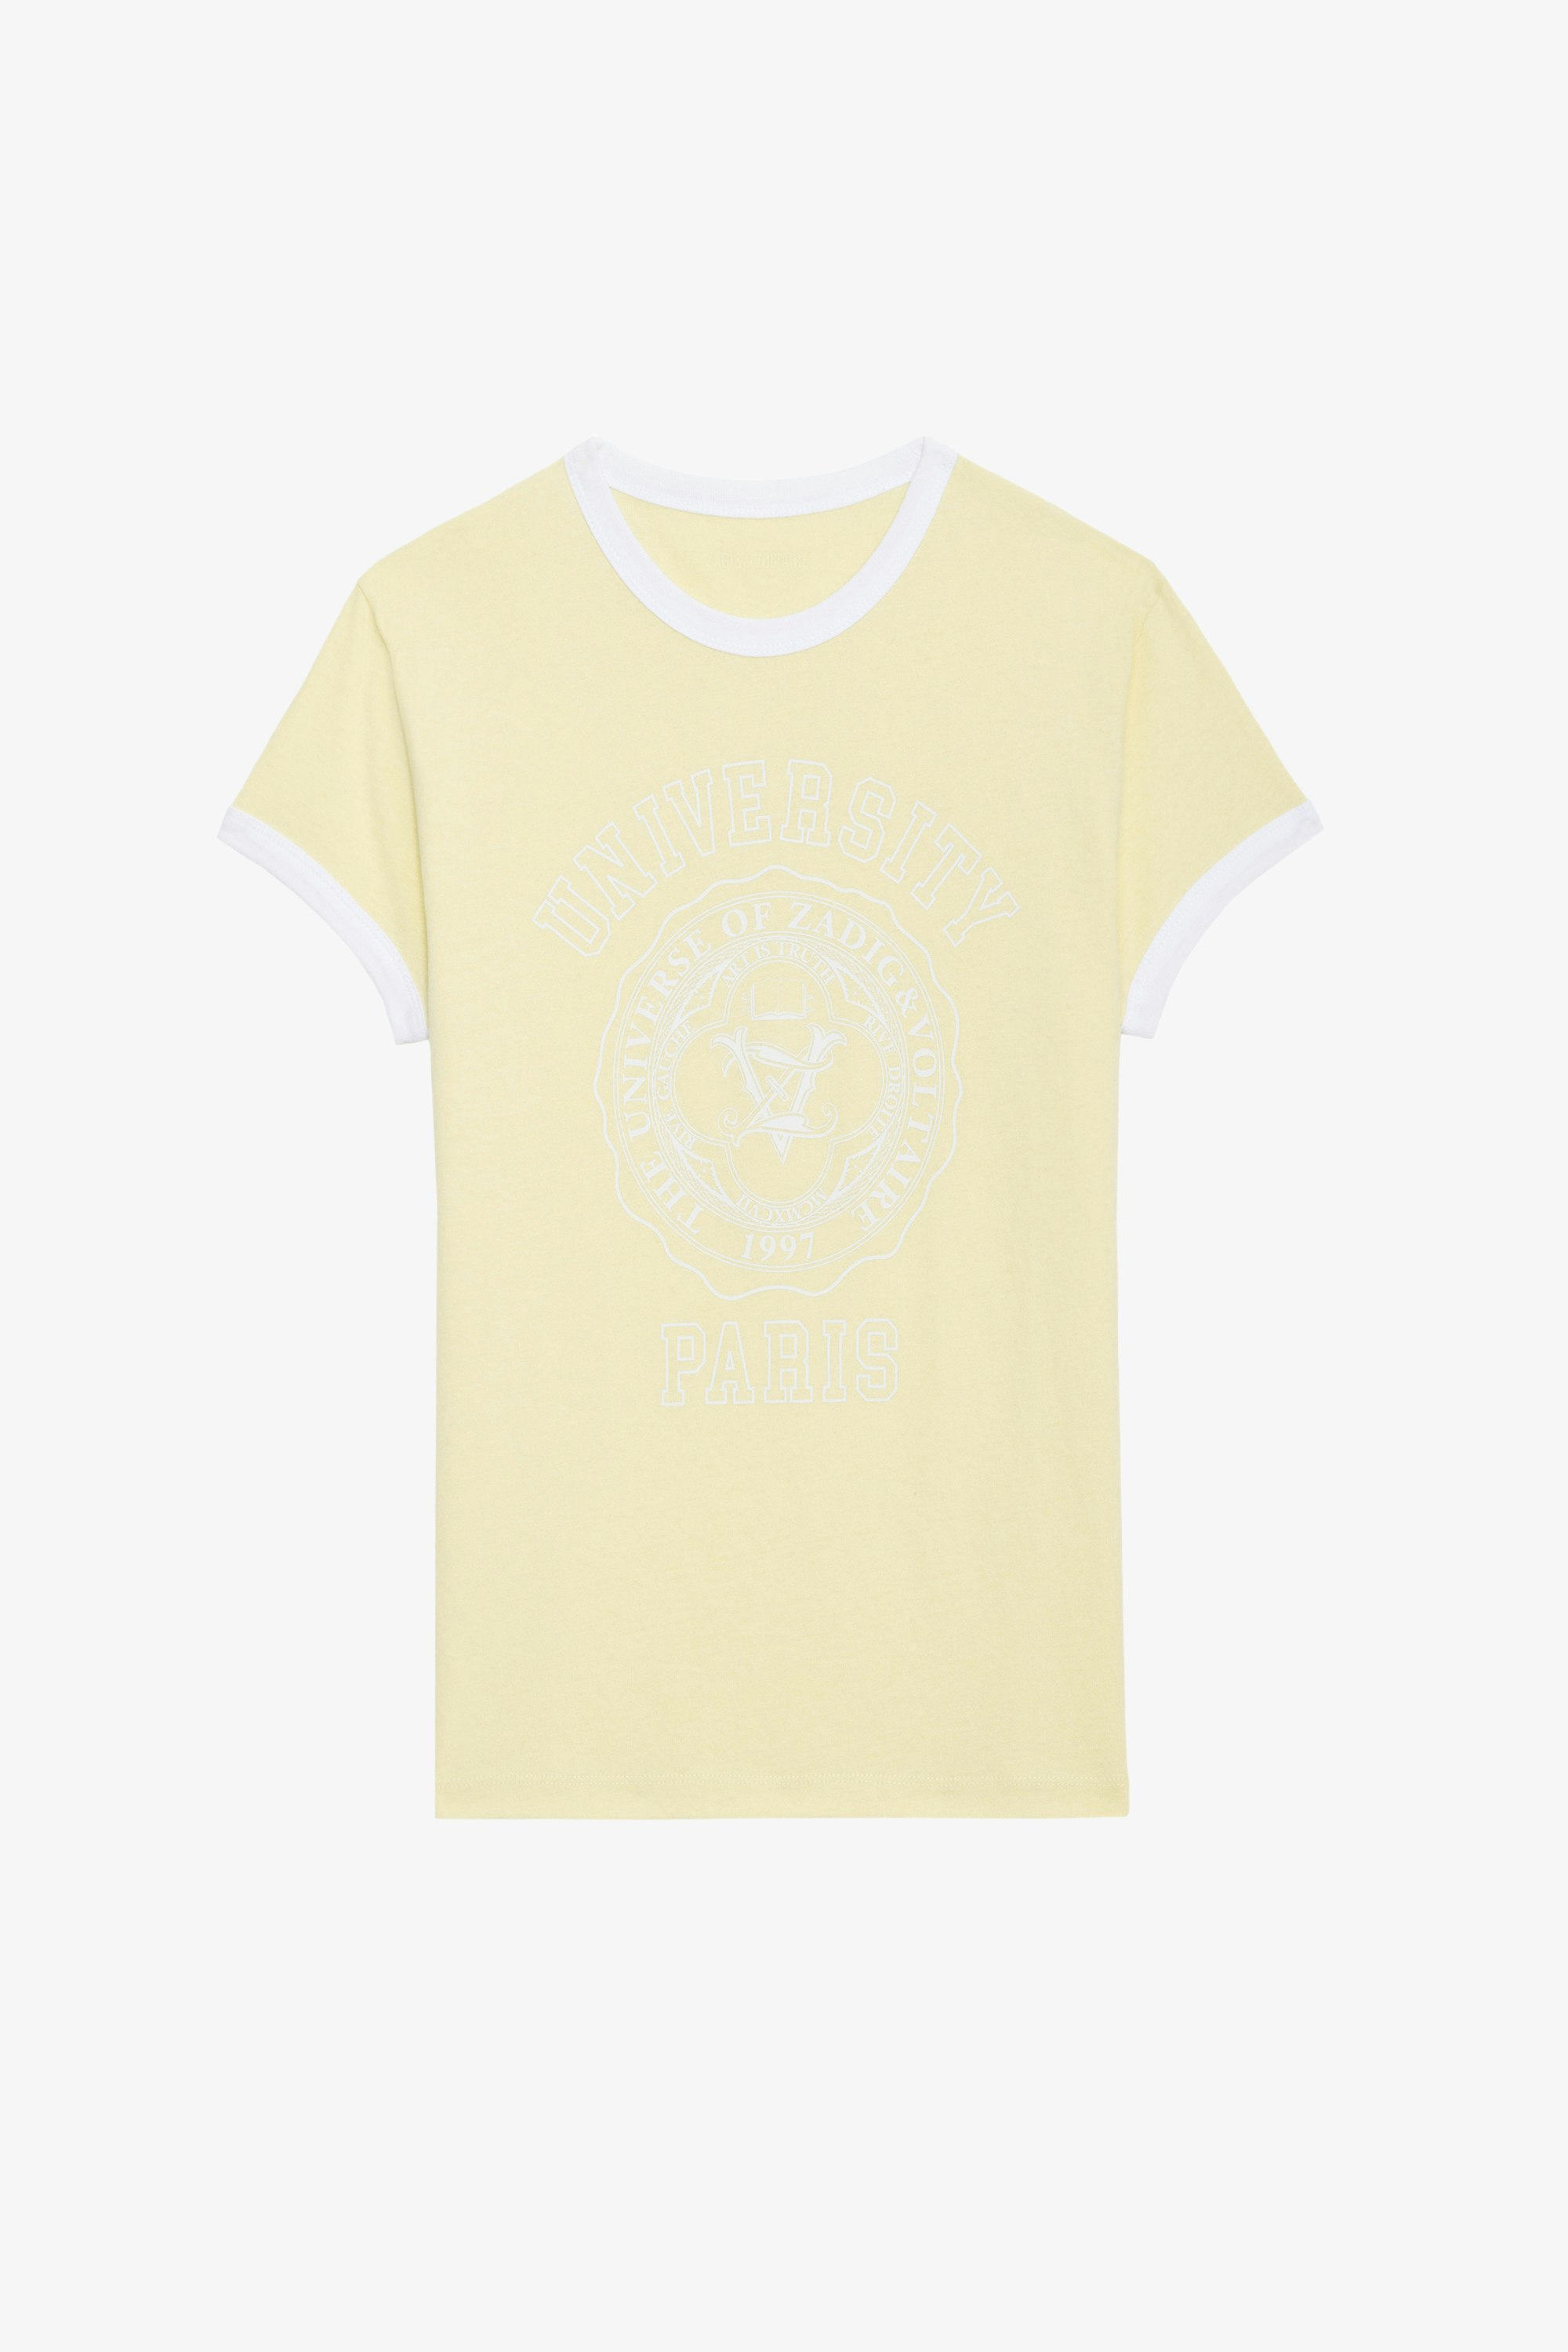 T-Shirt Walk University - Kurzarm-T-Shirt aus Baumwolle in Hellgelb mit University-Motiv und farblich abgesetzten Abschlüssen.